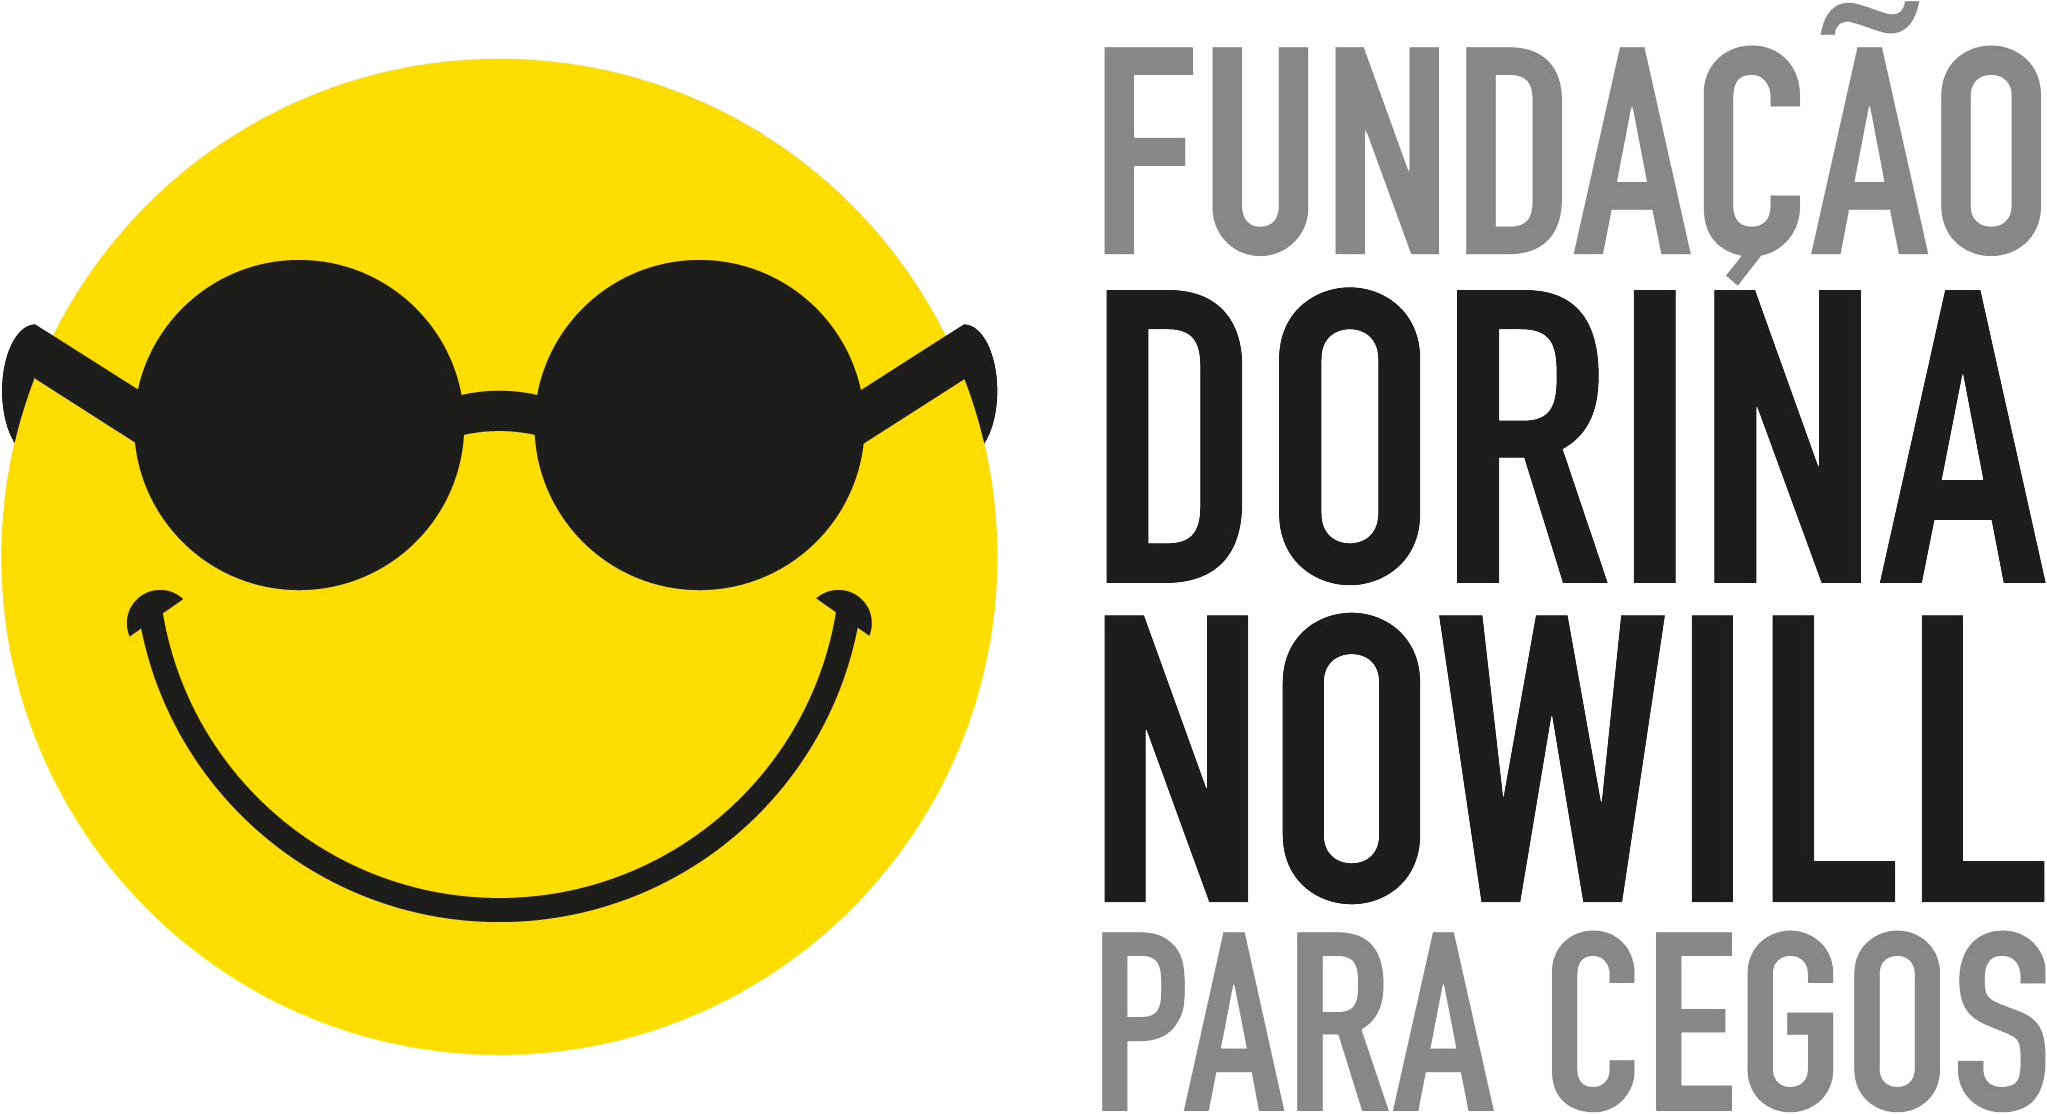 Logo da Fundação Dorina: Smile sorrindo, com óculos de sol e o texto: Fundação Dorina Nowill para Cegos ao lado.